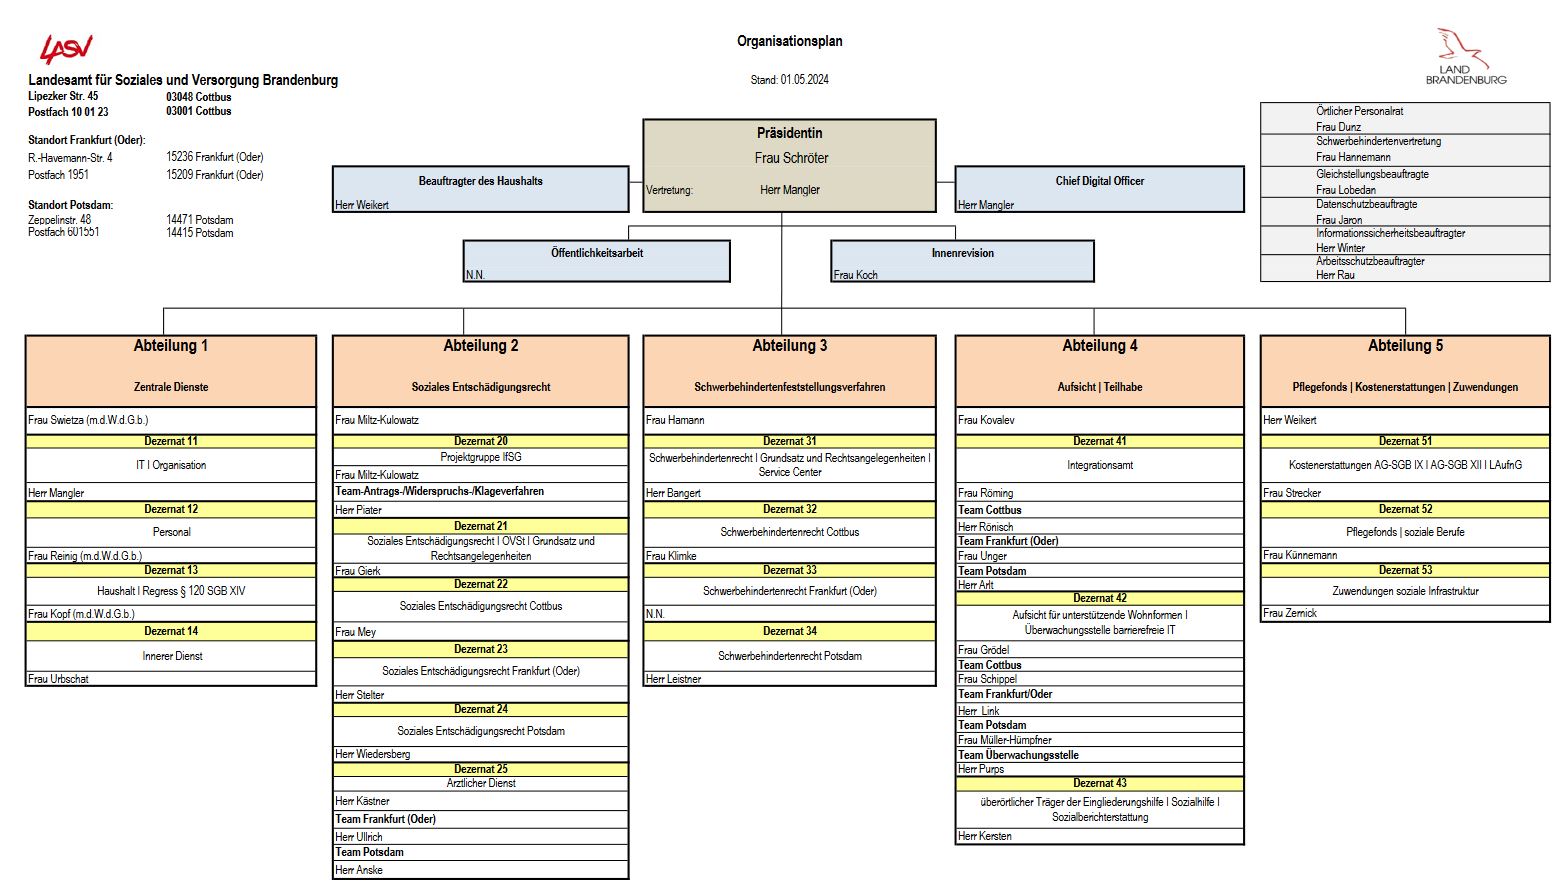 Darstellung der Organisationsstruktur des LASV